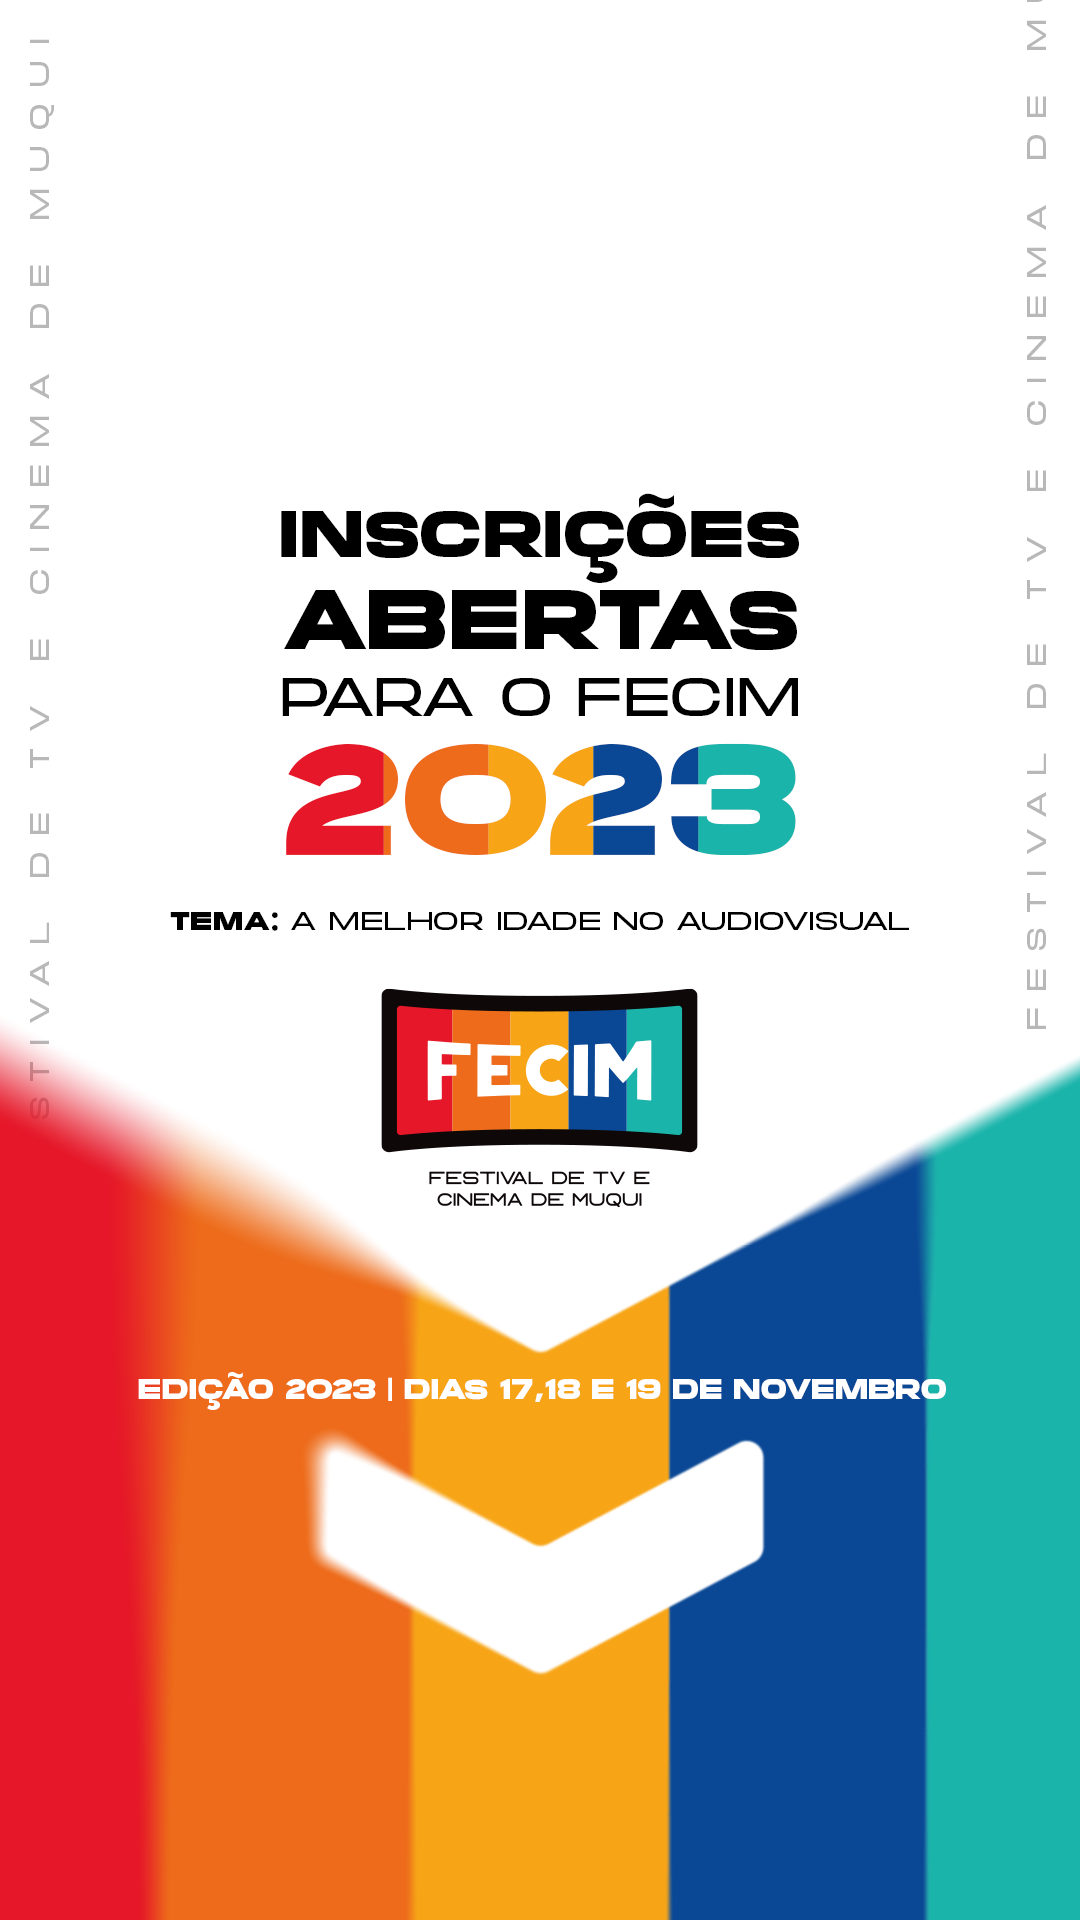 Inscrições abertas para a 12ª Edição do FECIM